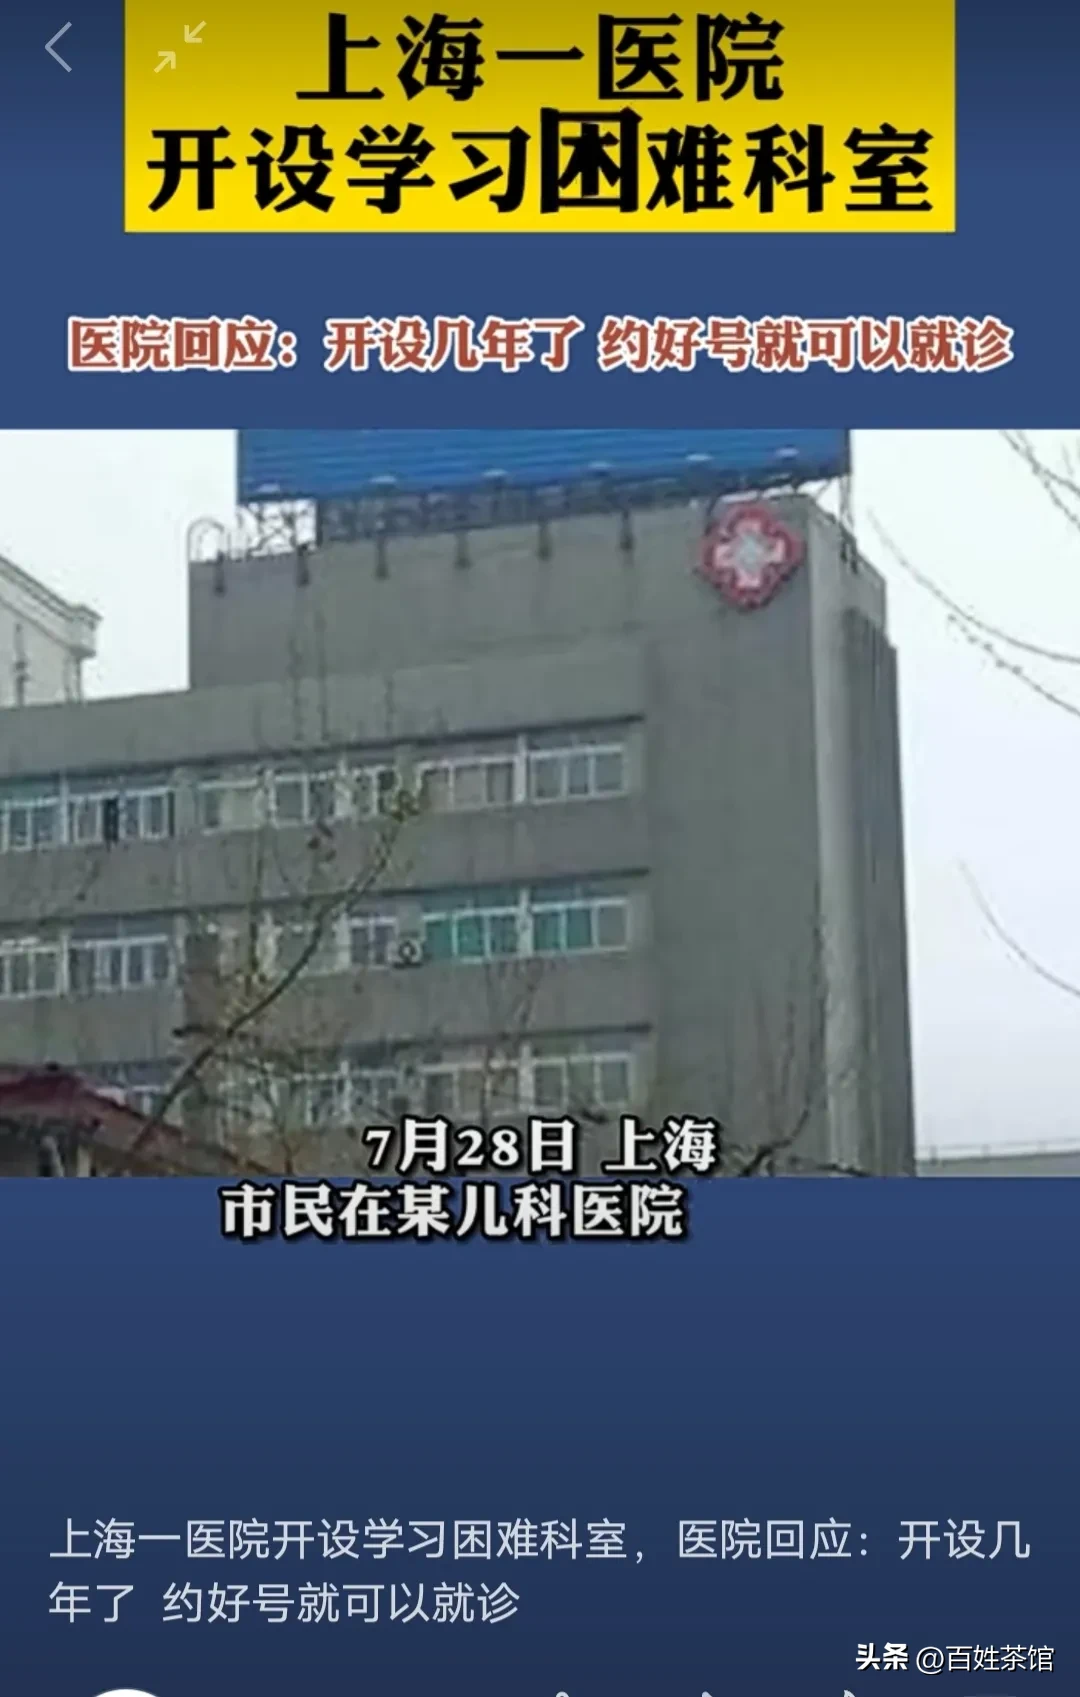 上海一儿科医院开设学习困难科室 强烈建议在全国推广上海这个儿科医院的做法！